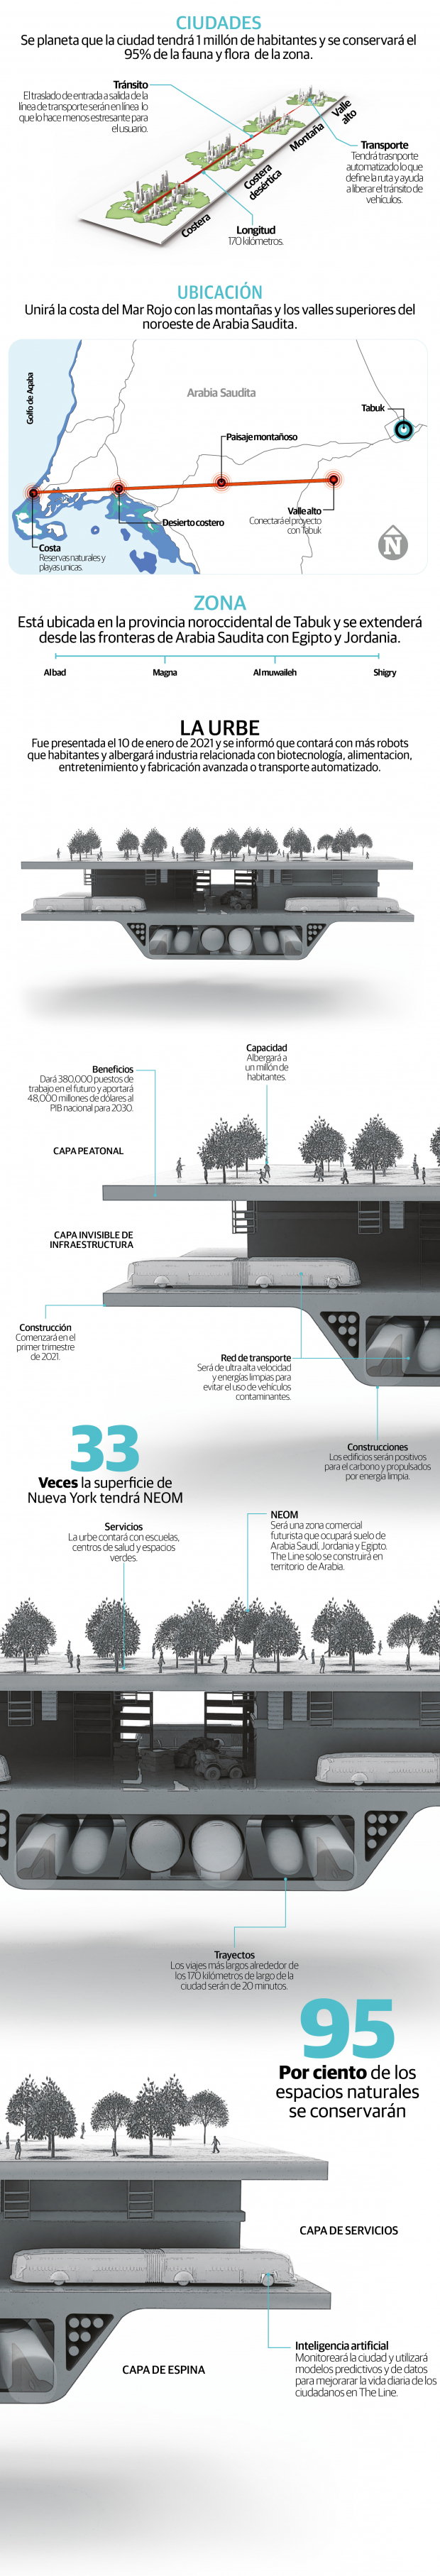 La Línea, una ciudad futurista de 170 kilómetros cero carbono